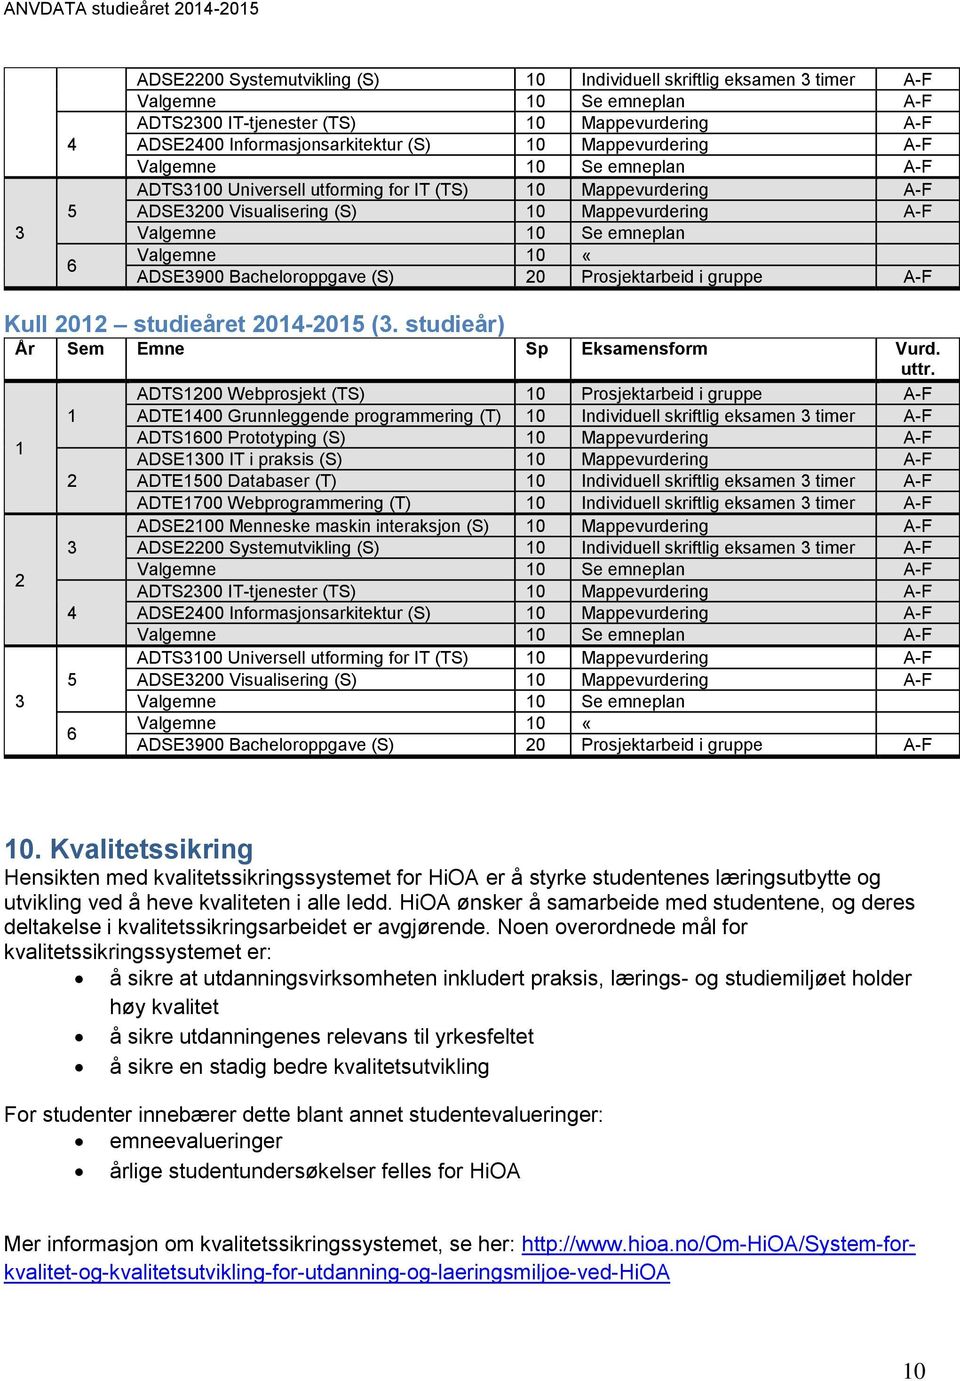 «ADSE3900 Bacheloroppgave (S) 20 Prosjektarbeid i gruppe A-F Kull 2012 studieåret 2014-2015 (3. studieår) År Sem Emne Sp Eksamensform Vurd. uttr.